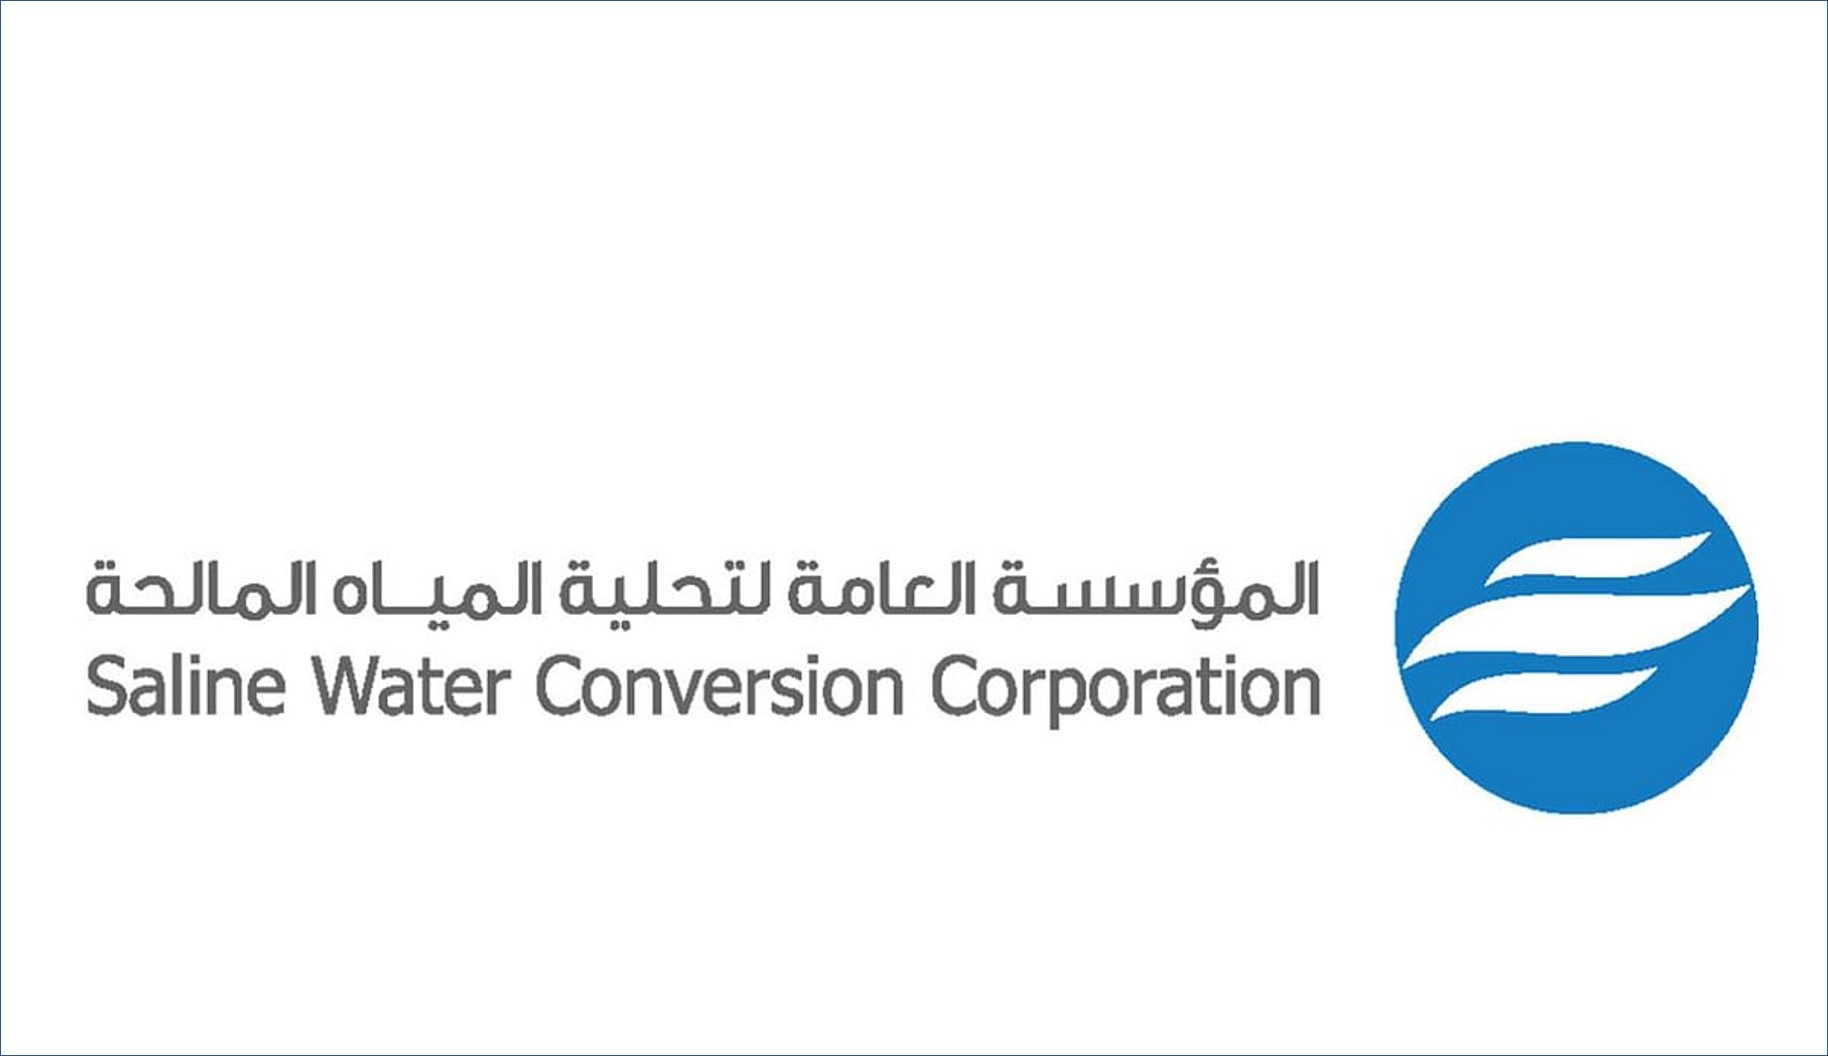 المؤسسة العامة لتحلية المياه تعلن عن برنامج السلامة والصحة المهنية